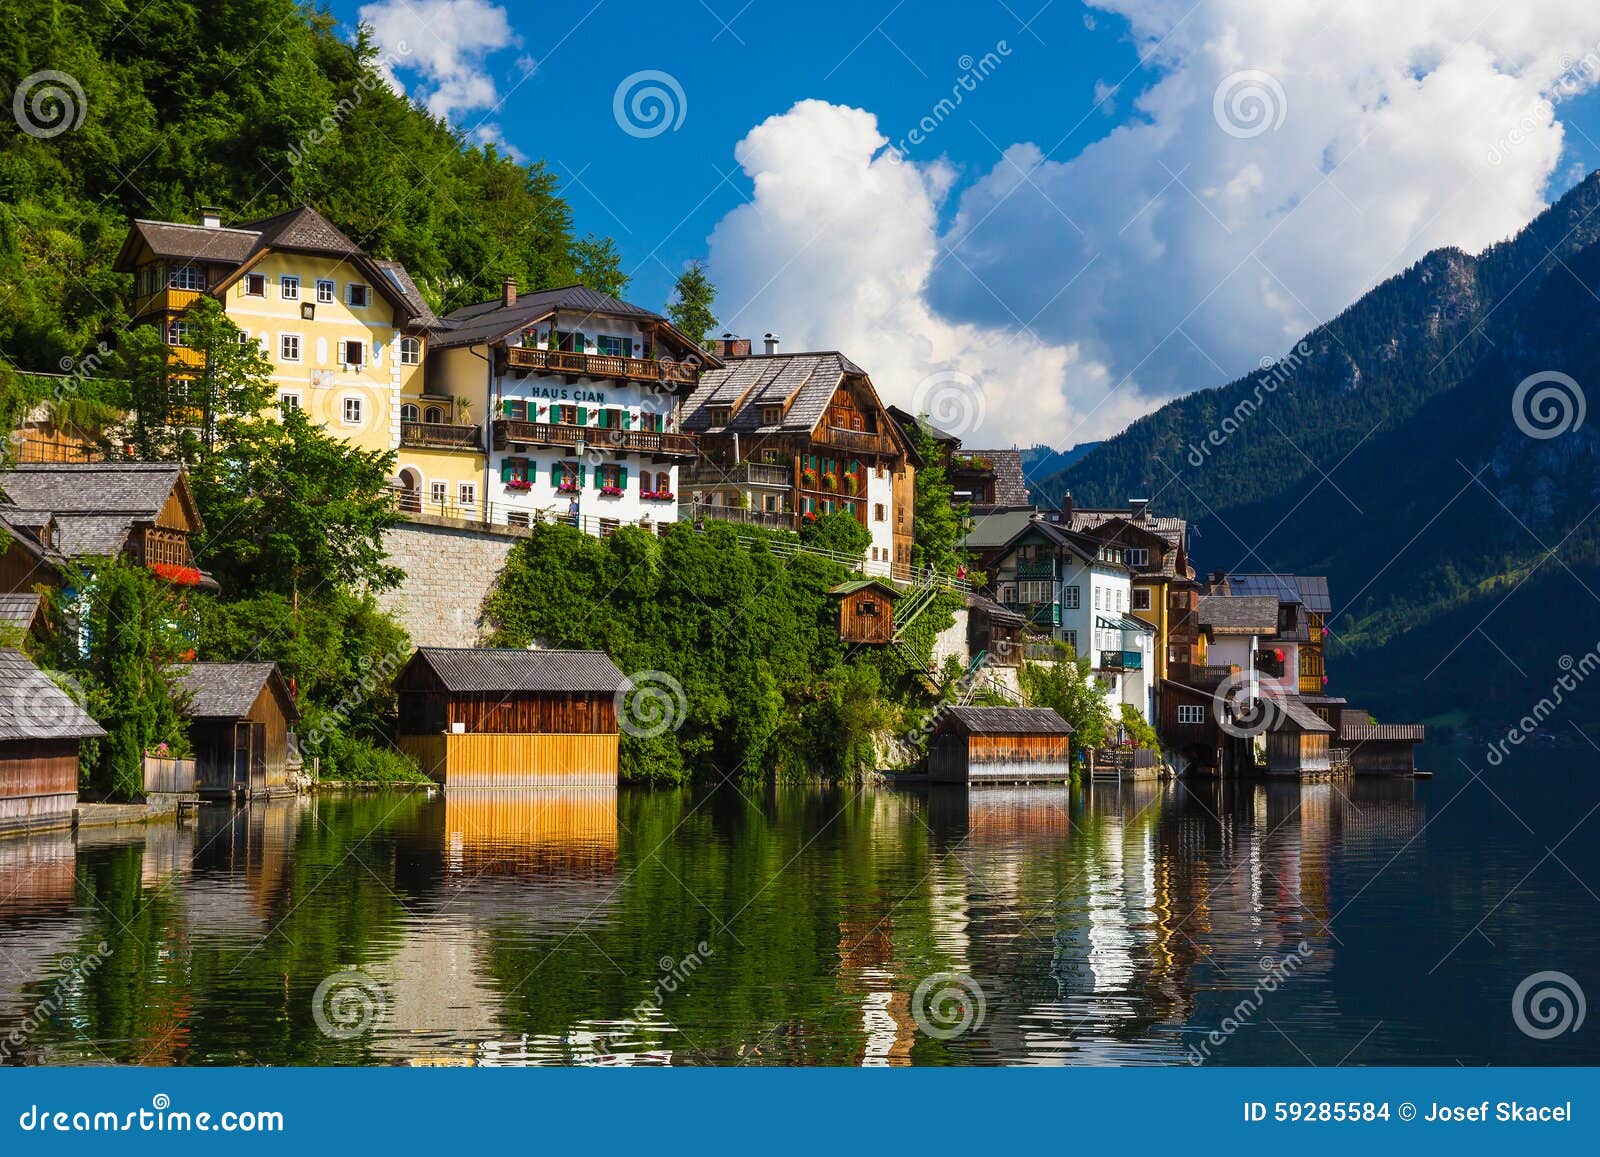 hallstatt-town-summer-alps-austria-pictoresque-59285584.jpg